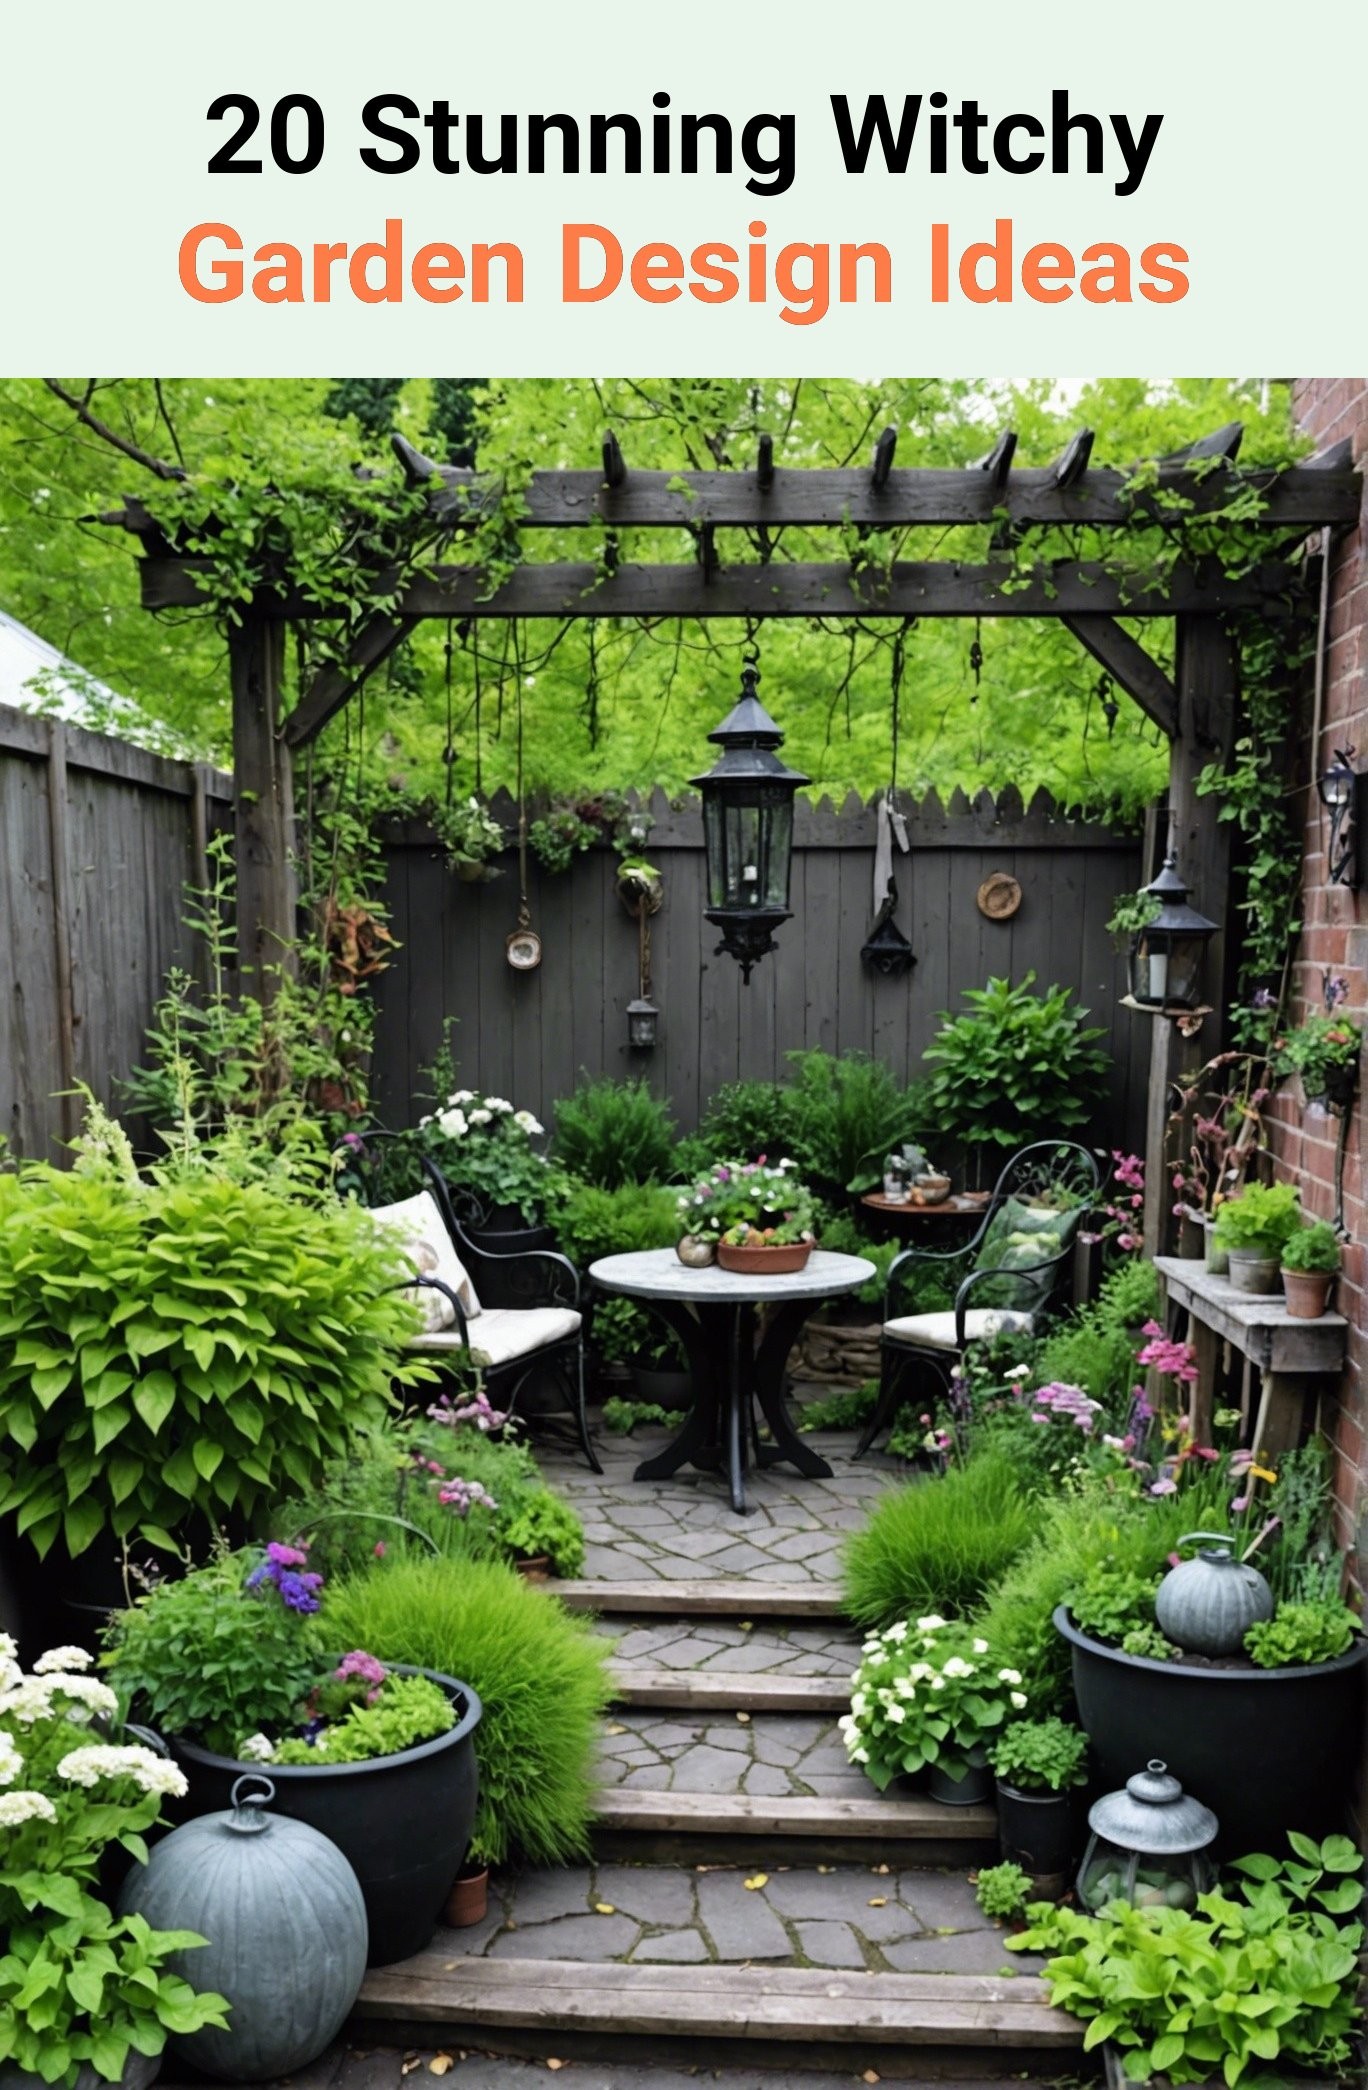 20 Stunning Witchy Garden Design Ideas